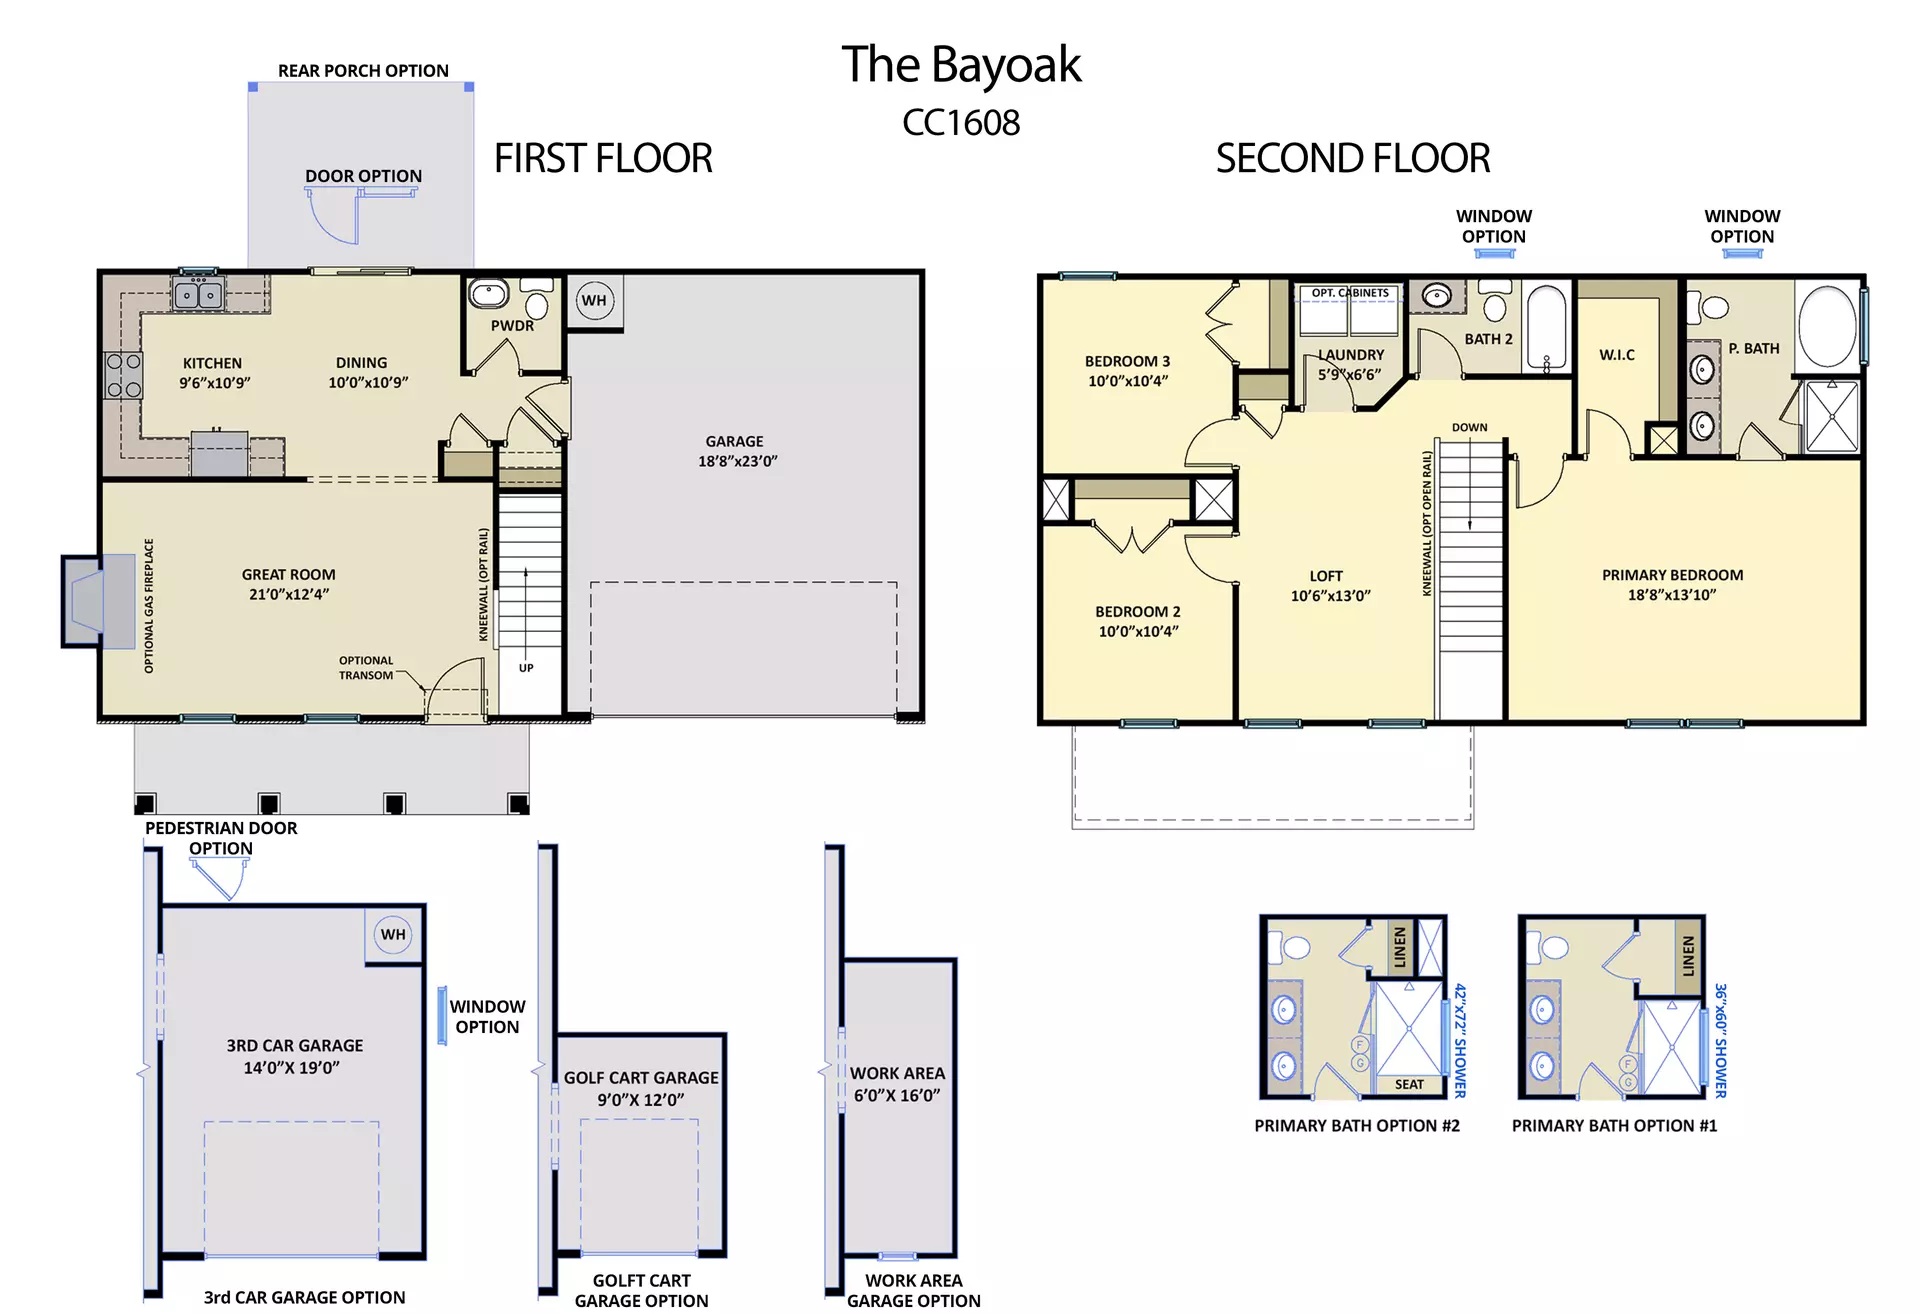 Bayoak floor plan image